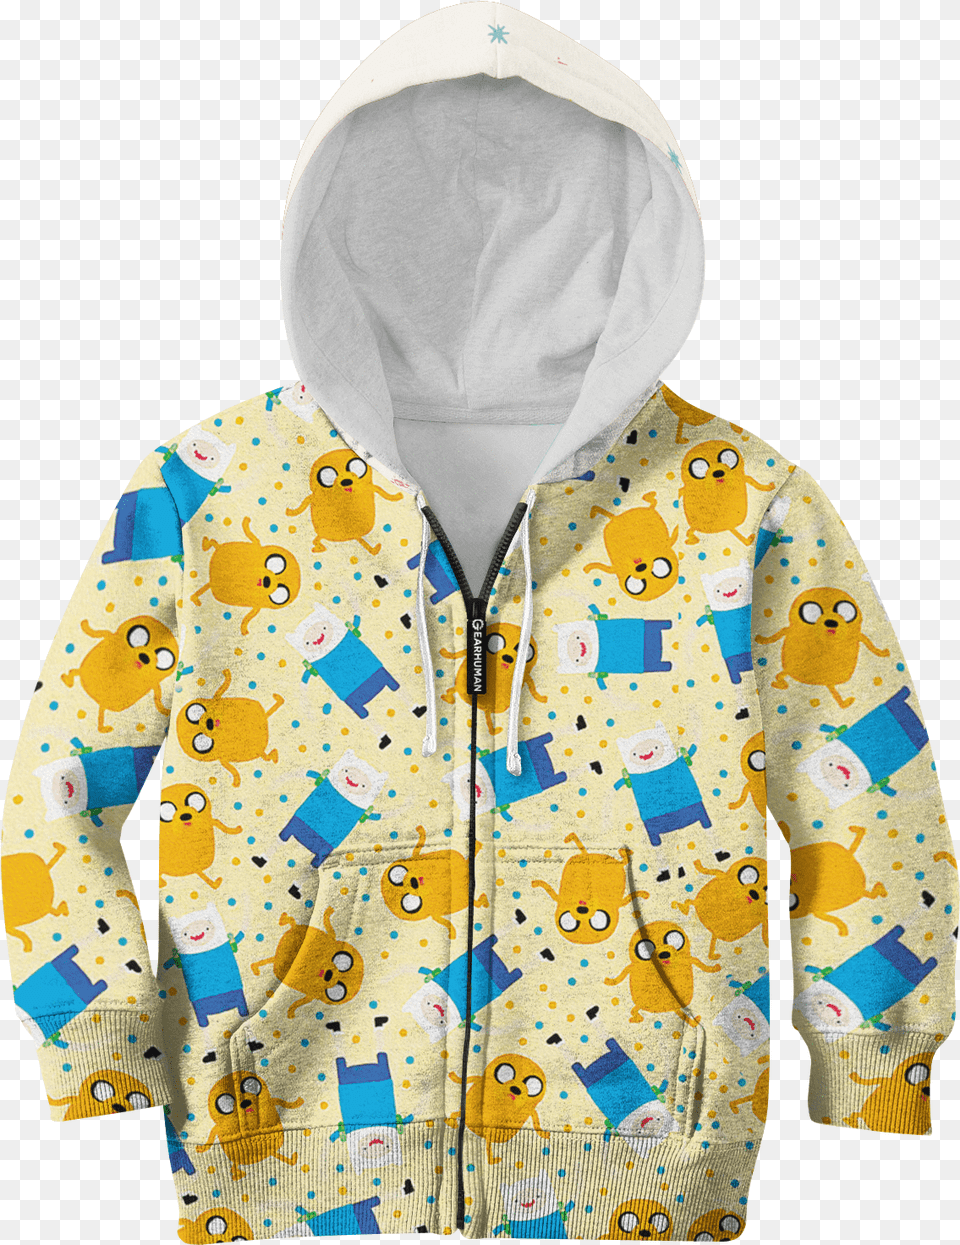 Adventure Time Finn And Jake Custom Hoodies T Shirt Hoodie, Jacket, Clothing, Coat, Sweatshirt Free Png Download